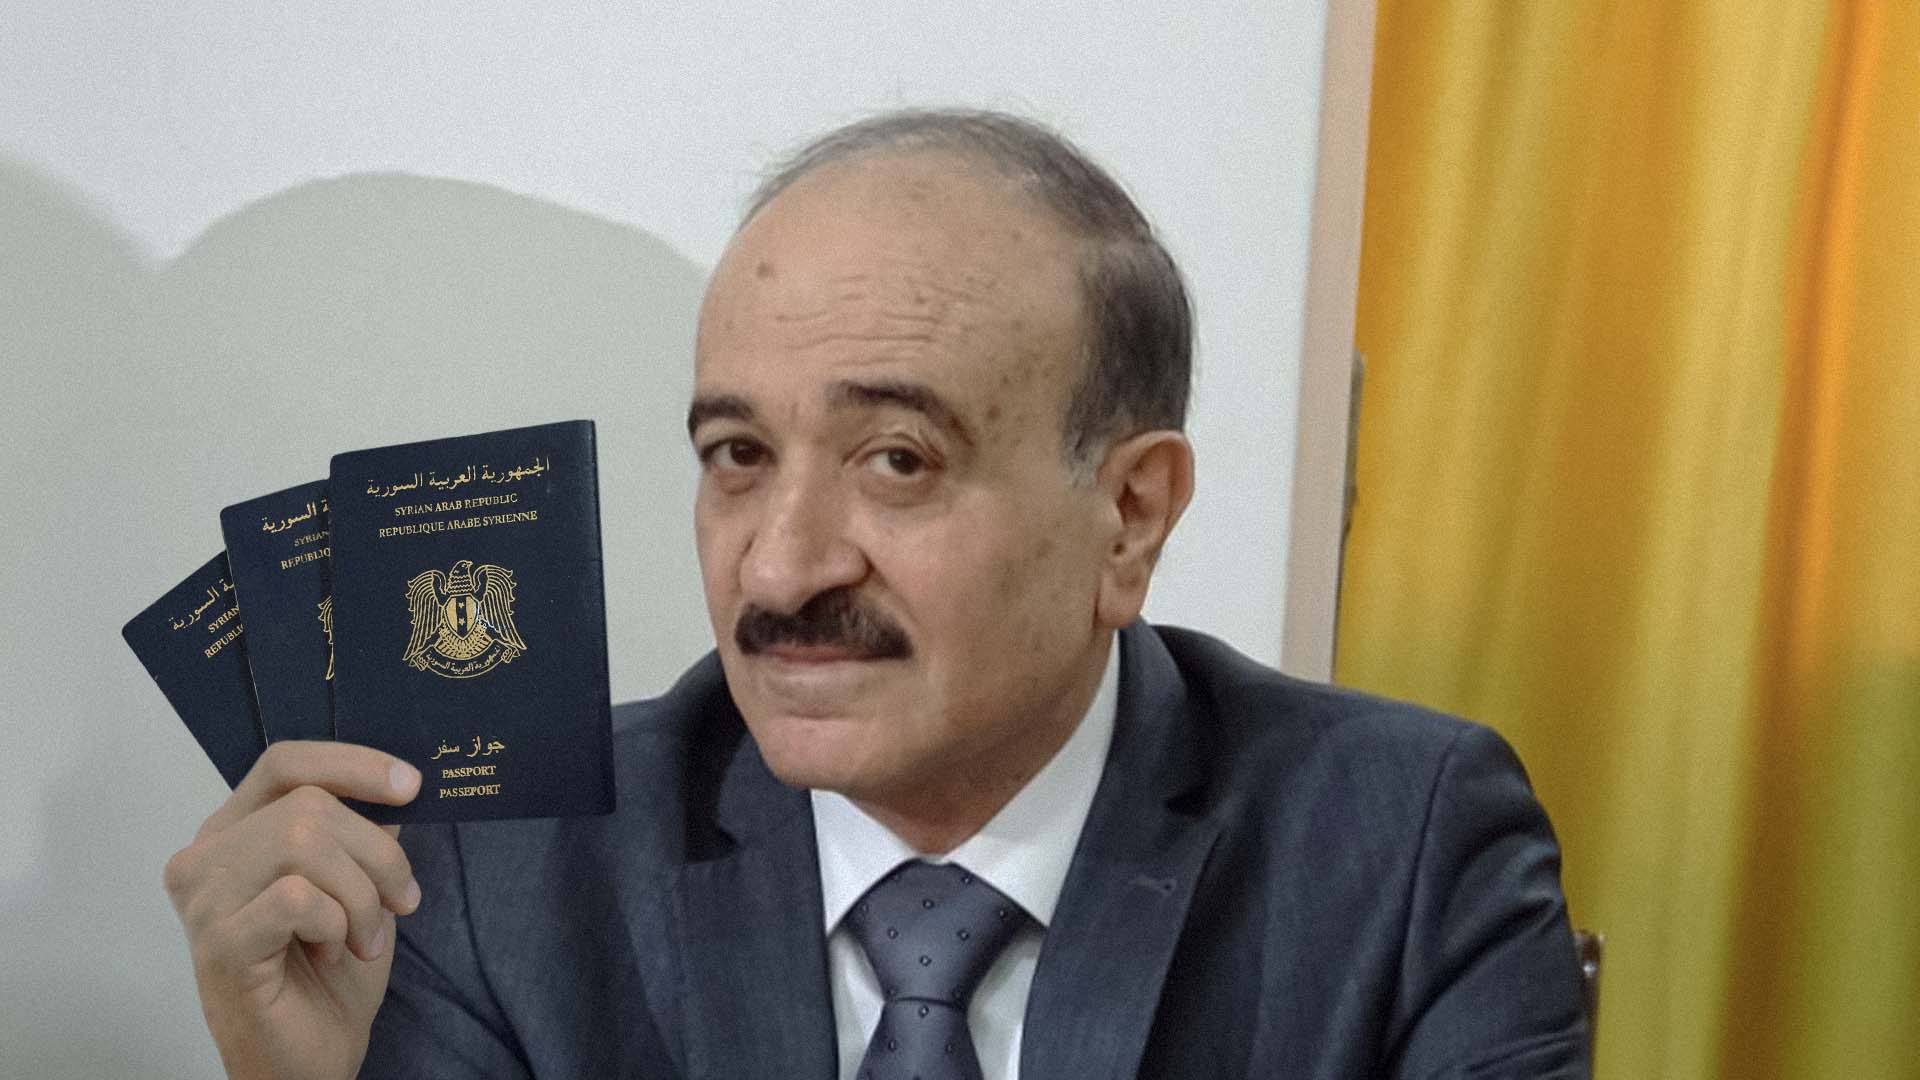 صورة الحكومة السورية تستثمر في قدرتها على تهجير مواطنيها وترفع أسعار جوازات السفر